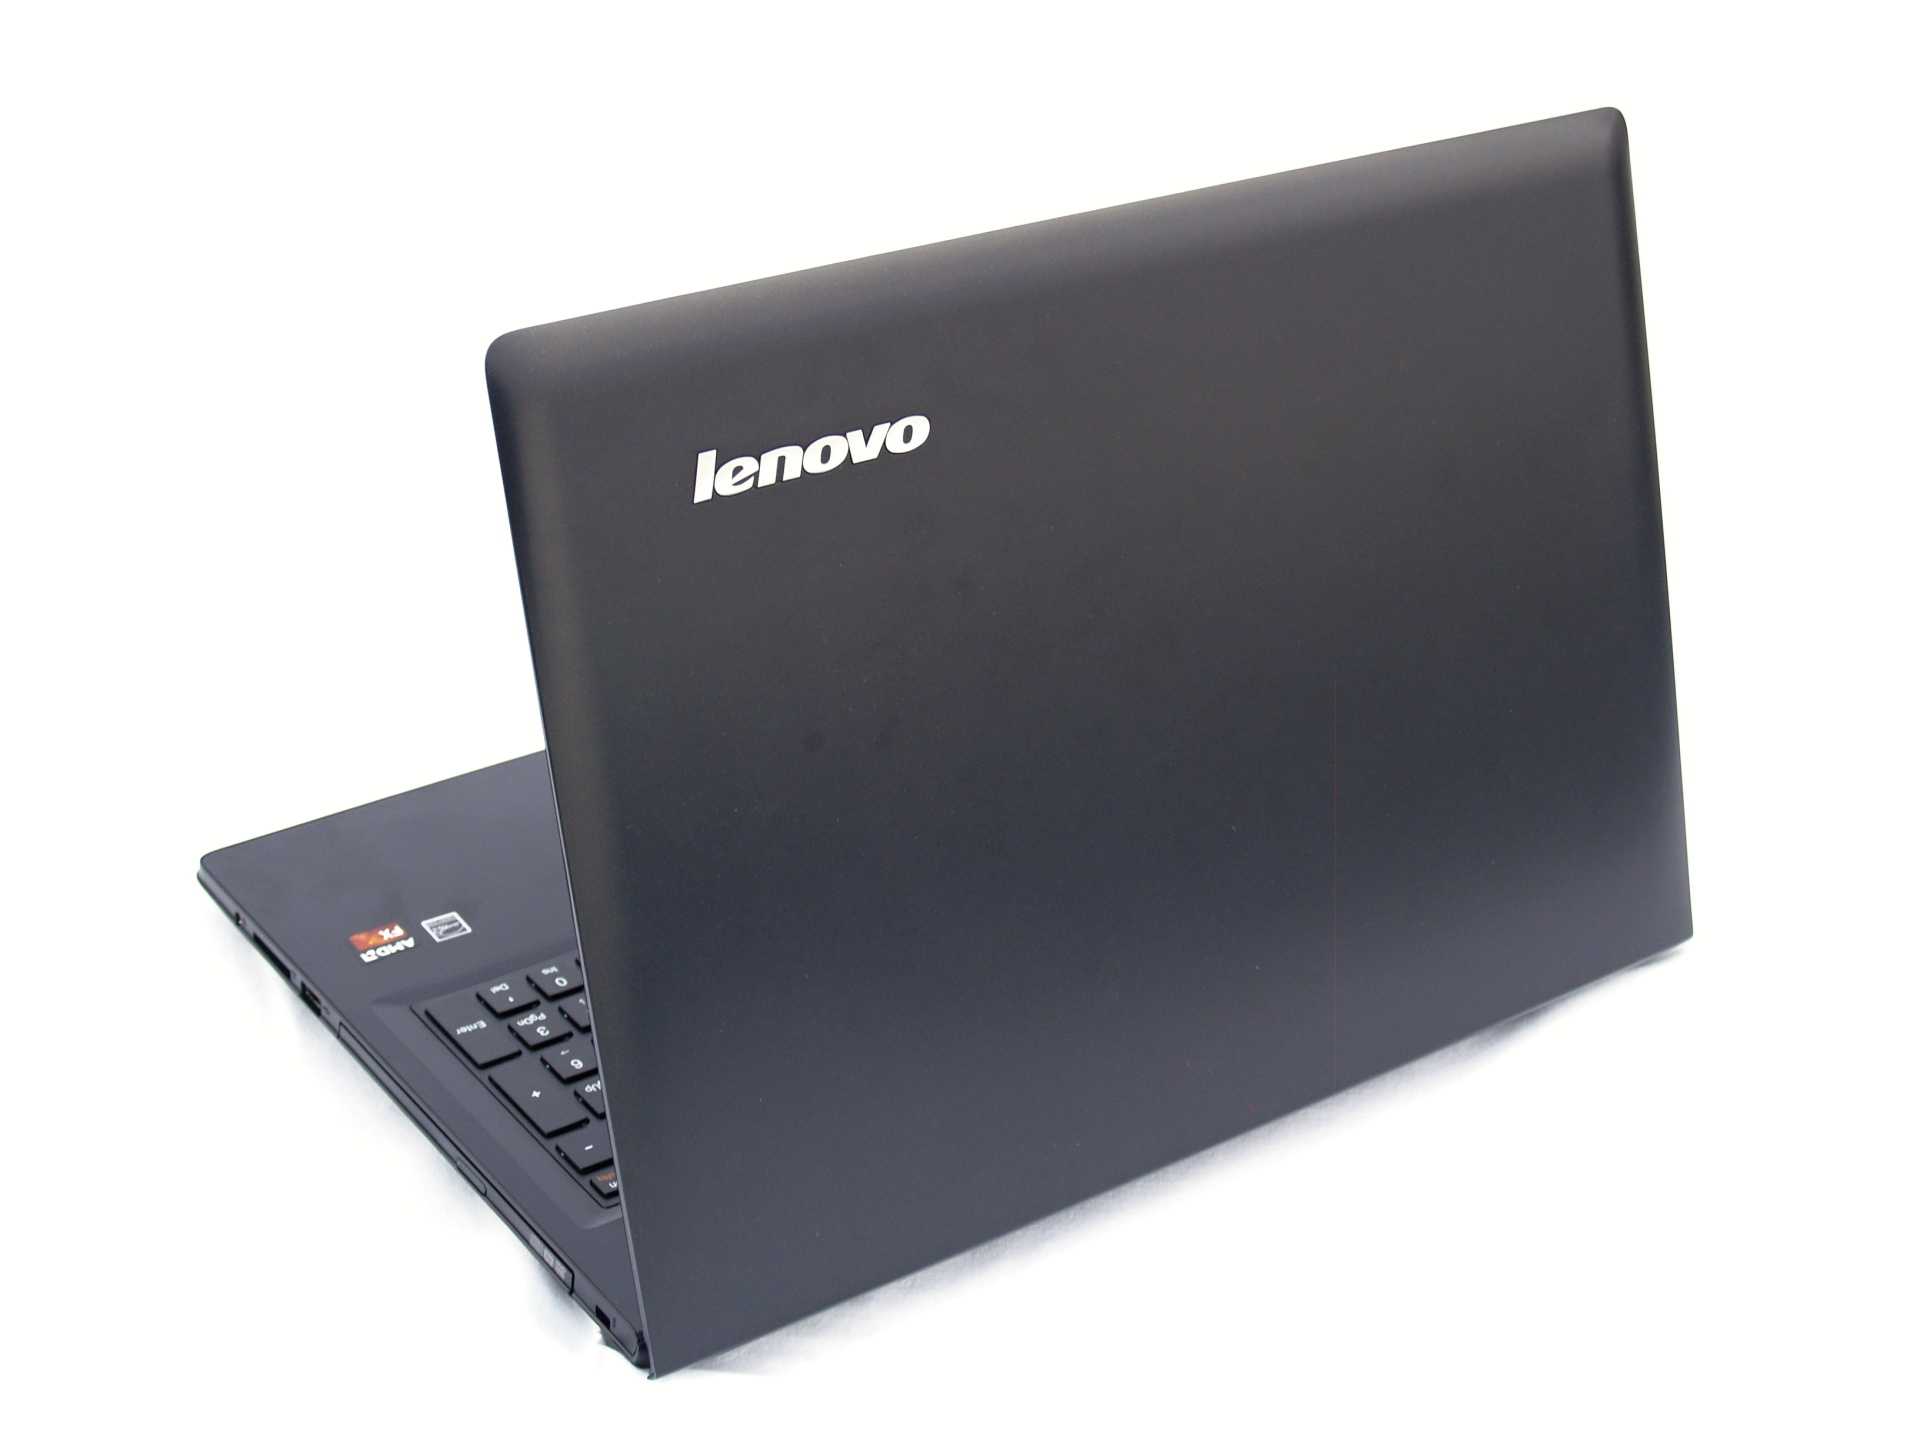 Ноутбук lenovo z50-70 (59436720) — купить, цена и характеристики, отзывы